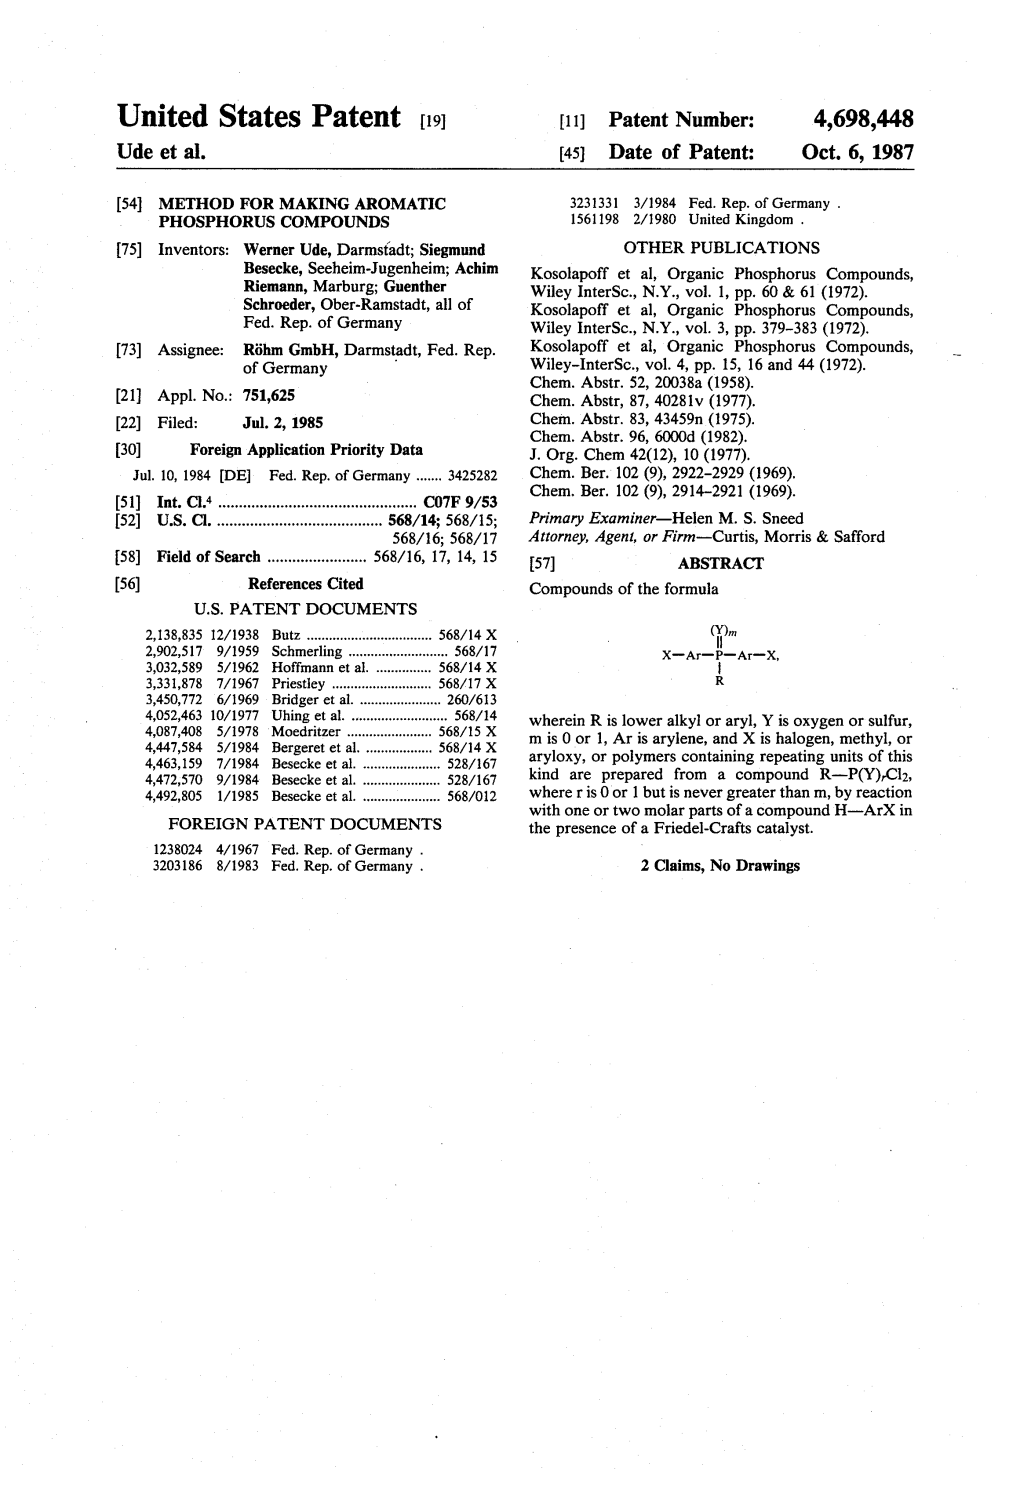 United States Patent (19) 11 Patent Number: 4,698,448 Ude Et Al